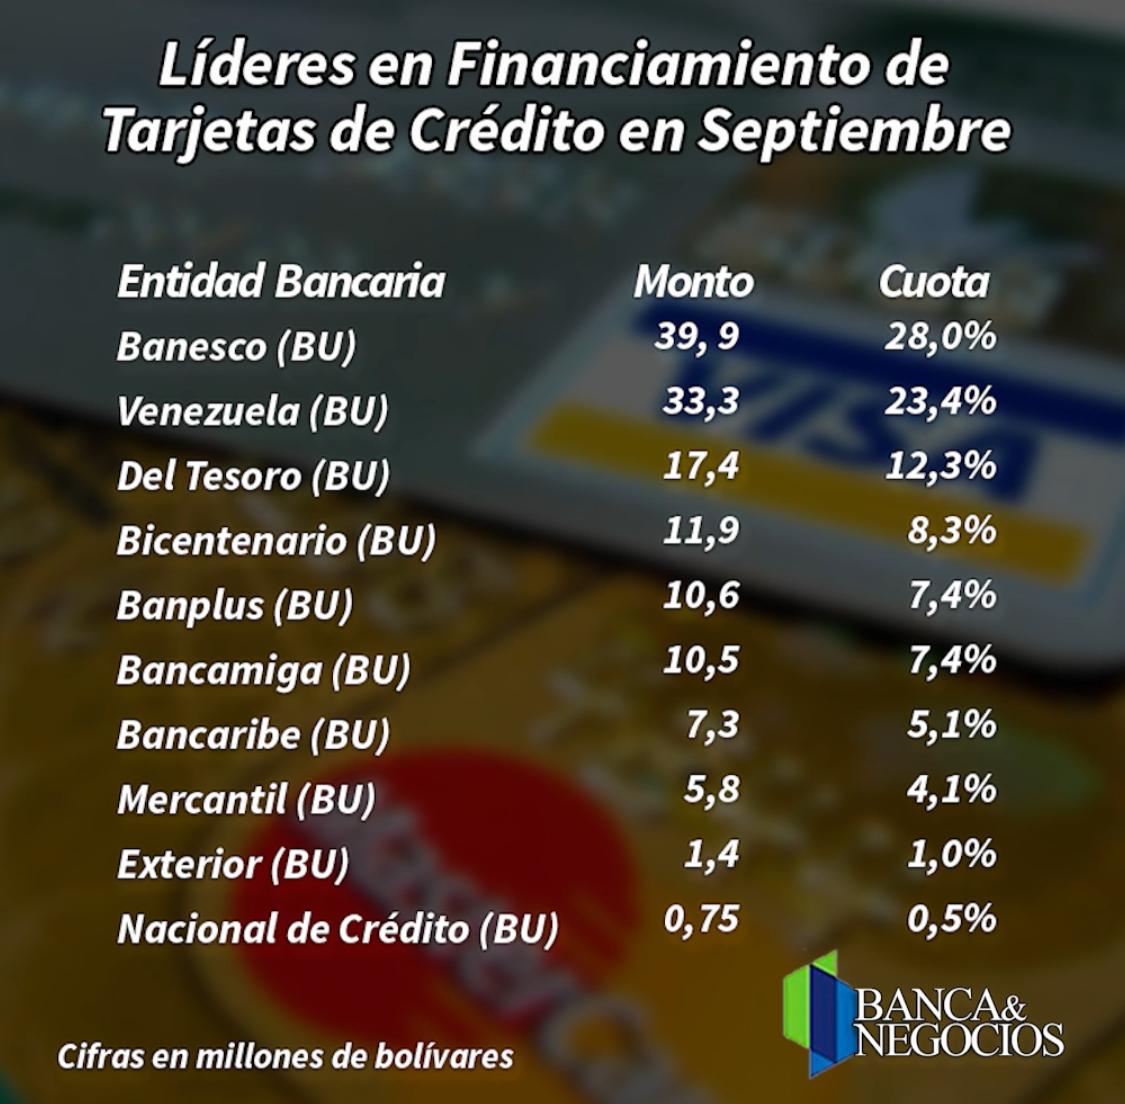 regresa el financiamiento en venezuela conoce los bancos lideres en tarjetas de credito laverdaddemonagas.com liderestarjetasdecreditoseptiembre2022